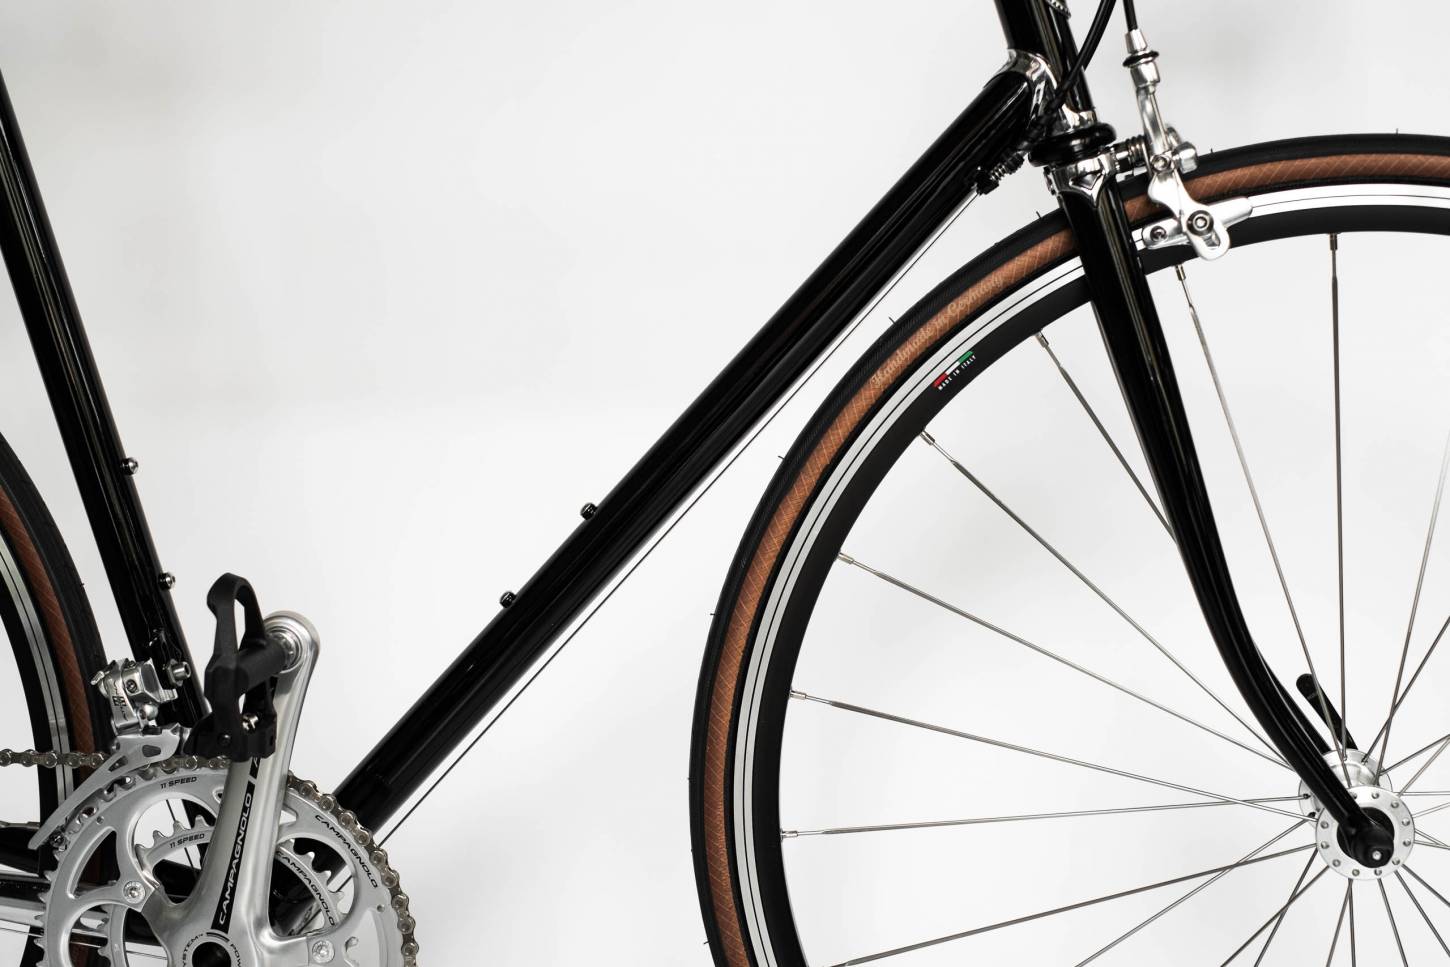 Studio Brisant "No 6" bicicleta de carreras "Made in Italy" - Campagnolo Athena 11 compartimiento